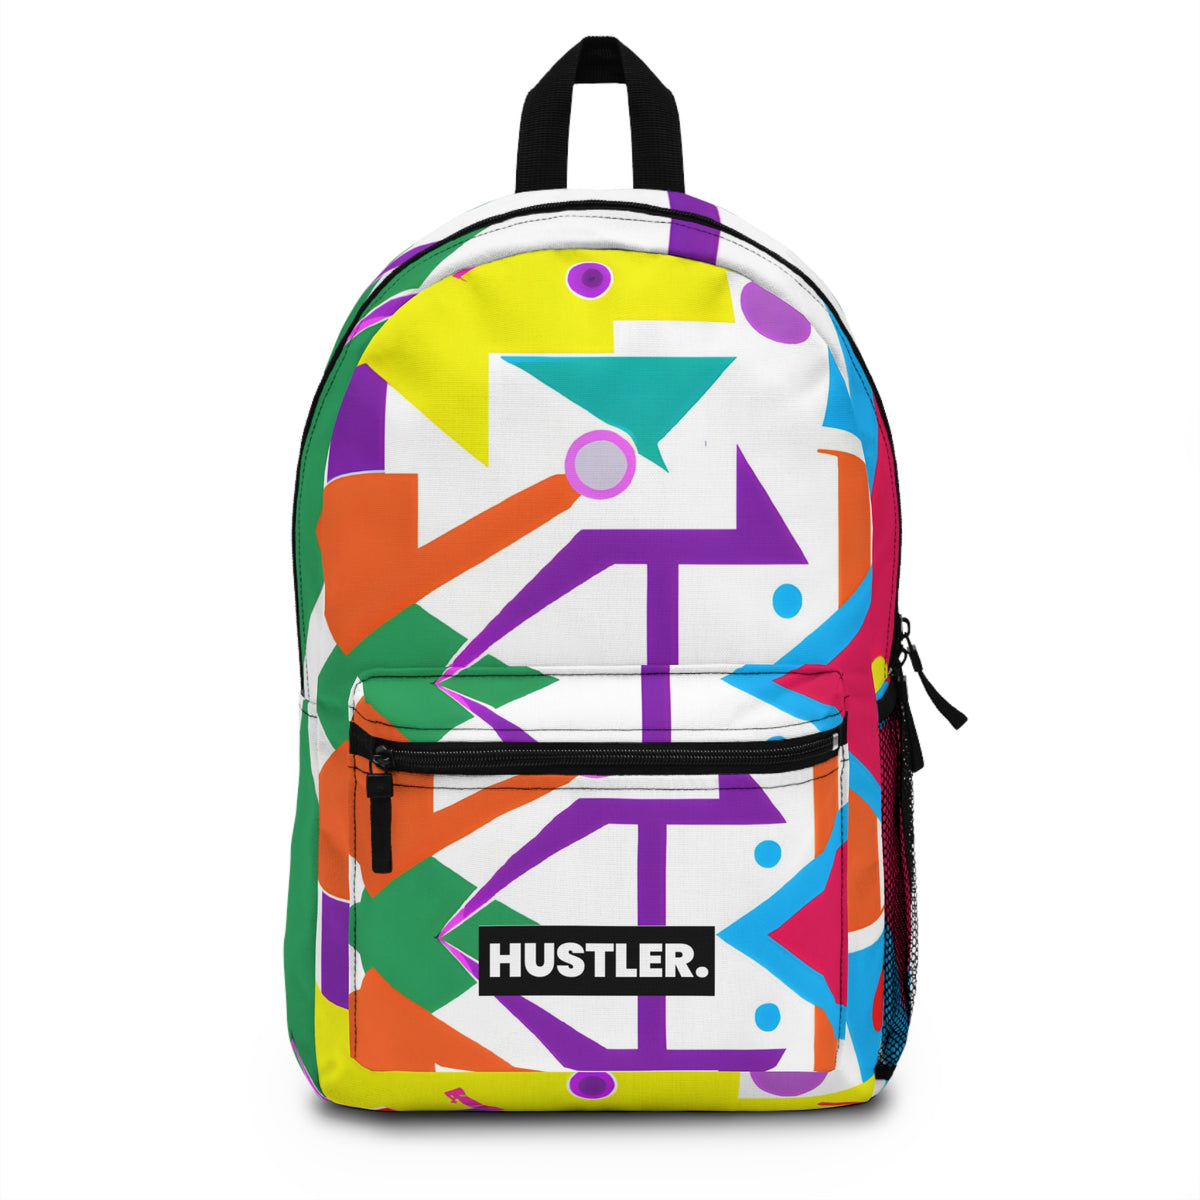 CosmicCharisma - Hustler Backpack